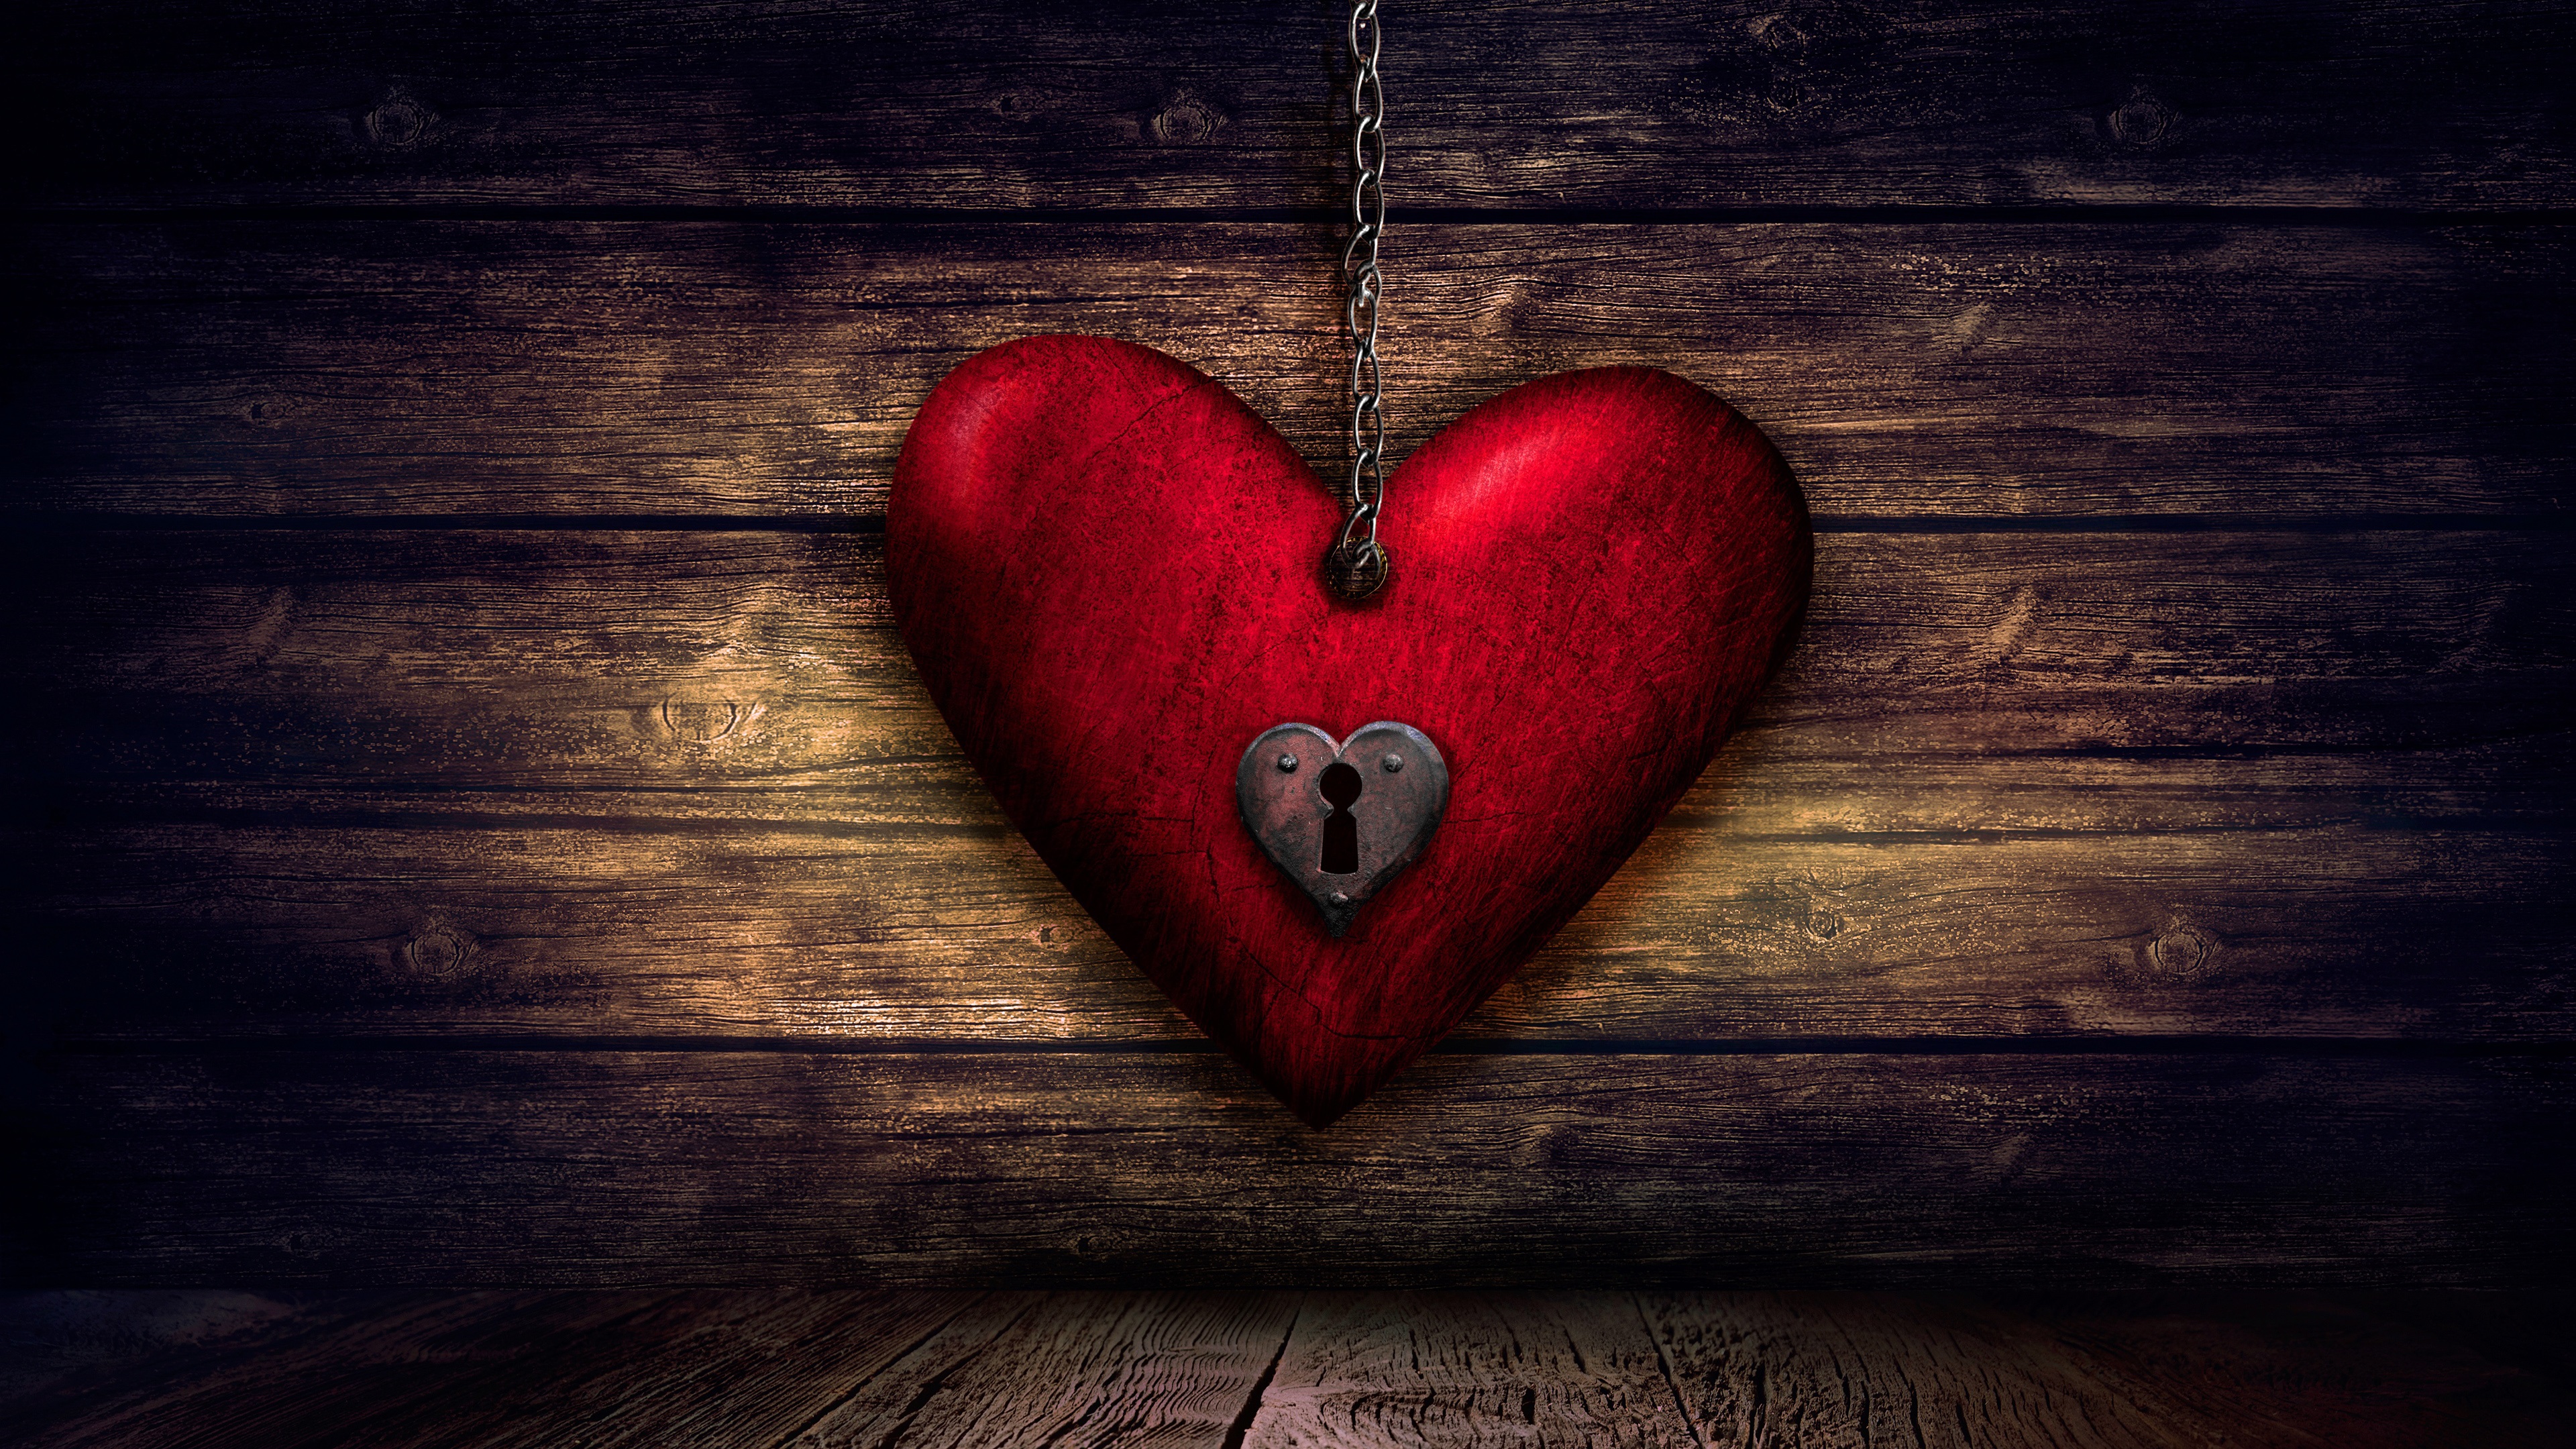 Wallpaper Love Heart, Lock, Key, Wood Board - Key To My Heart My Children -  3840x2160 Wallpaper 